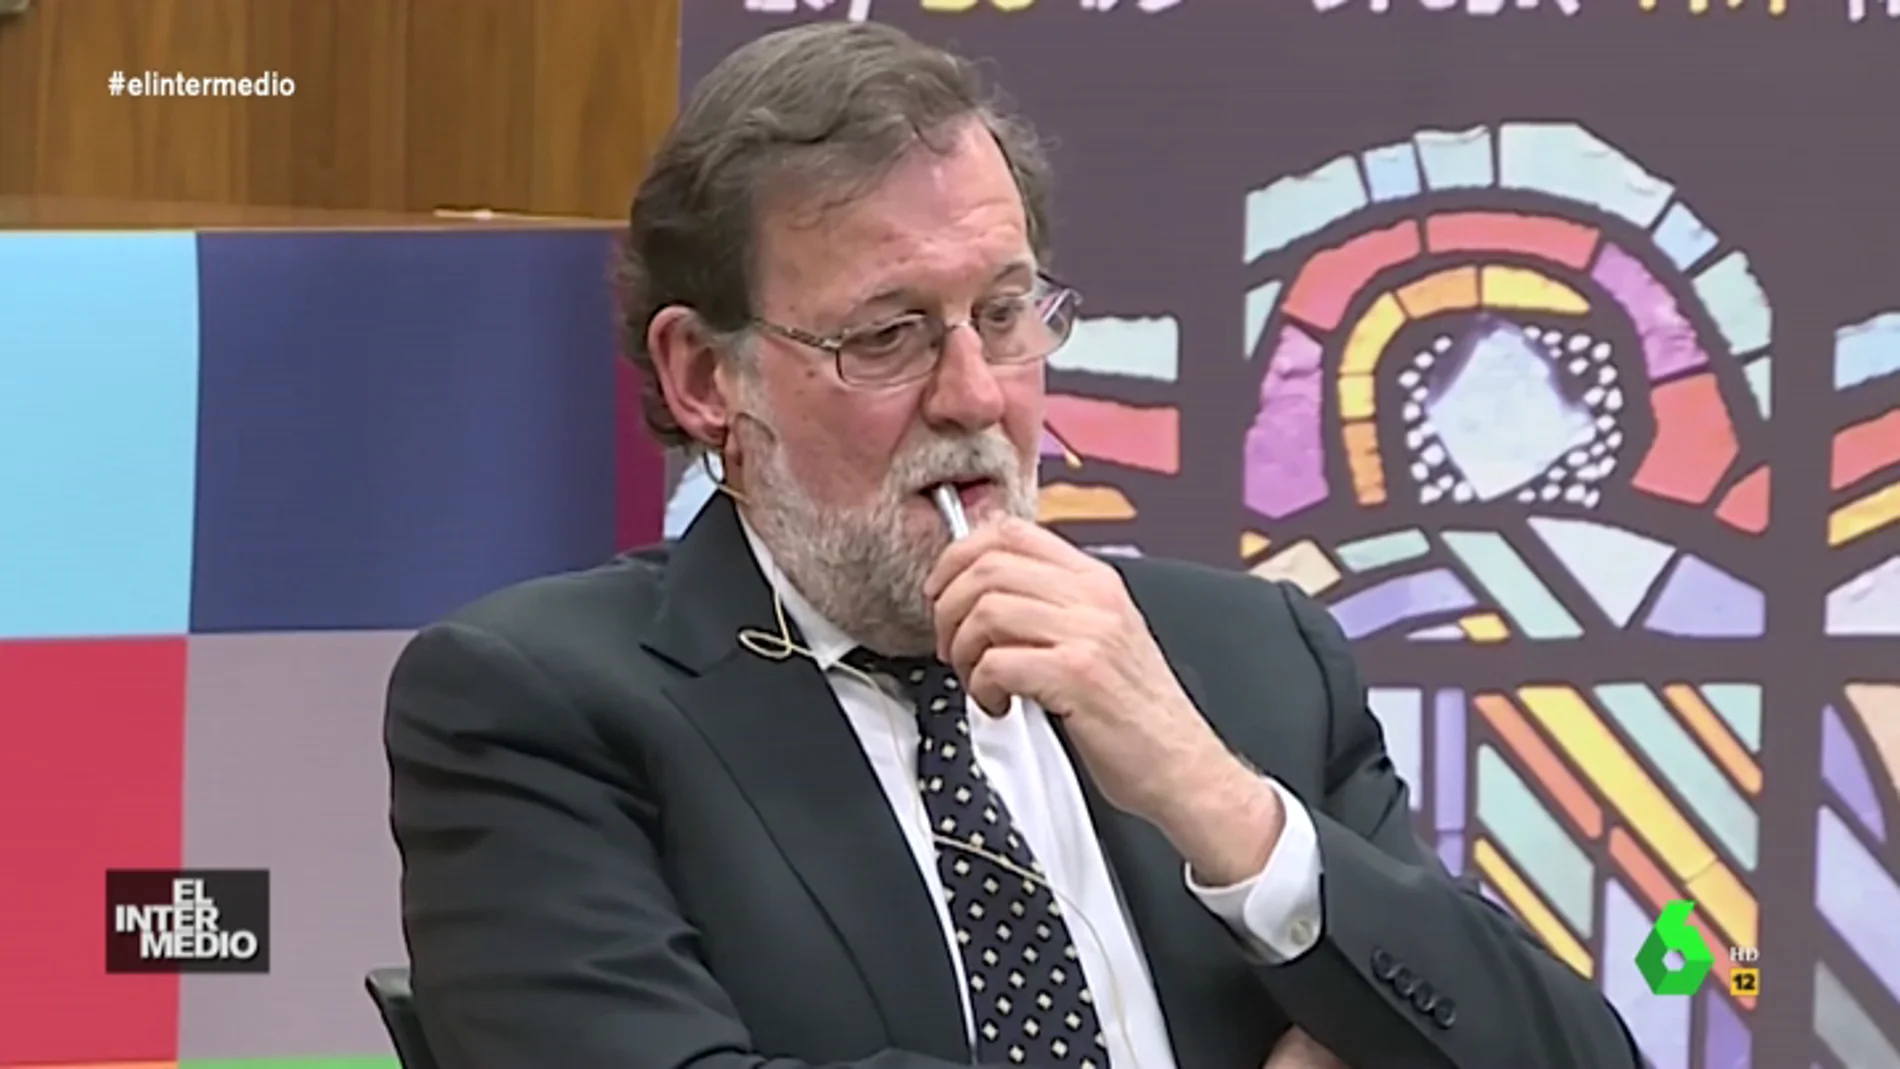 #VídeosManipulados: El grito que sorprende a Mariano Rajoy en un coloquio en la Universidad de León